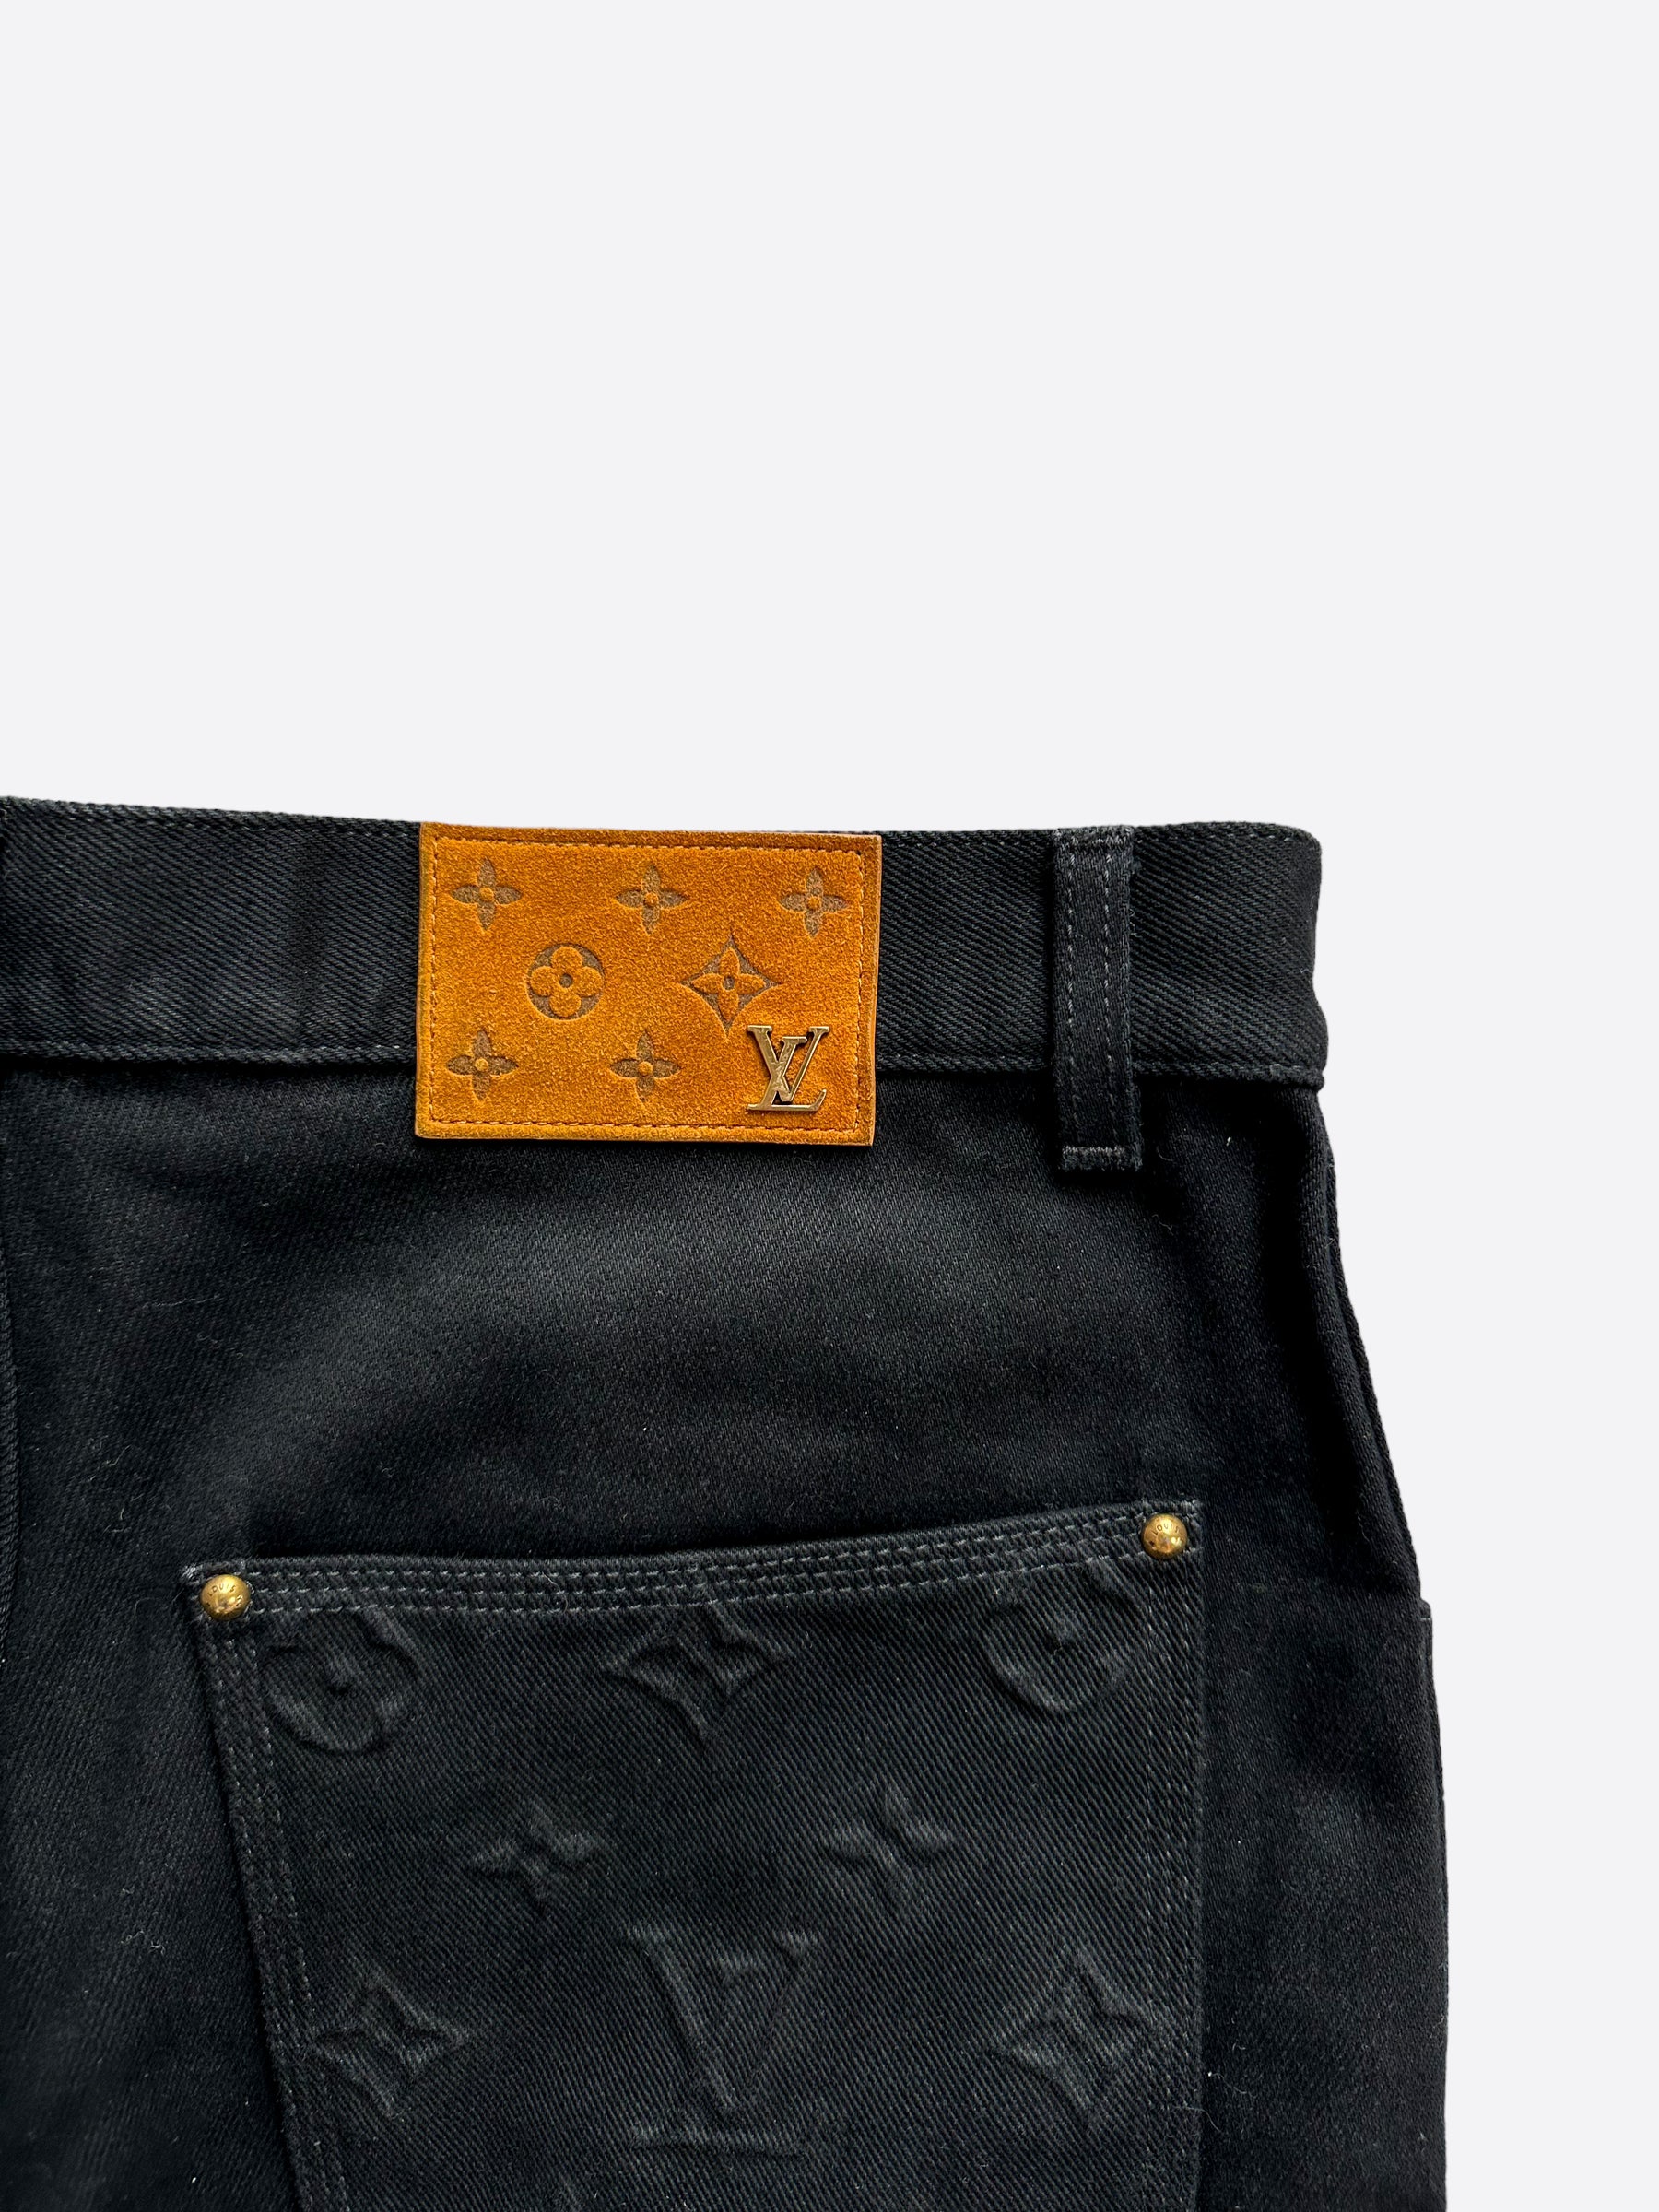 Louis Vuitton, Jeans, Louis Vuitton Black Jeans